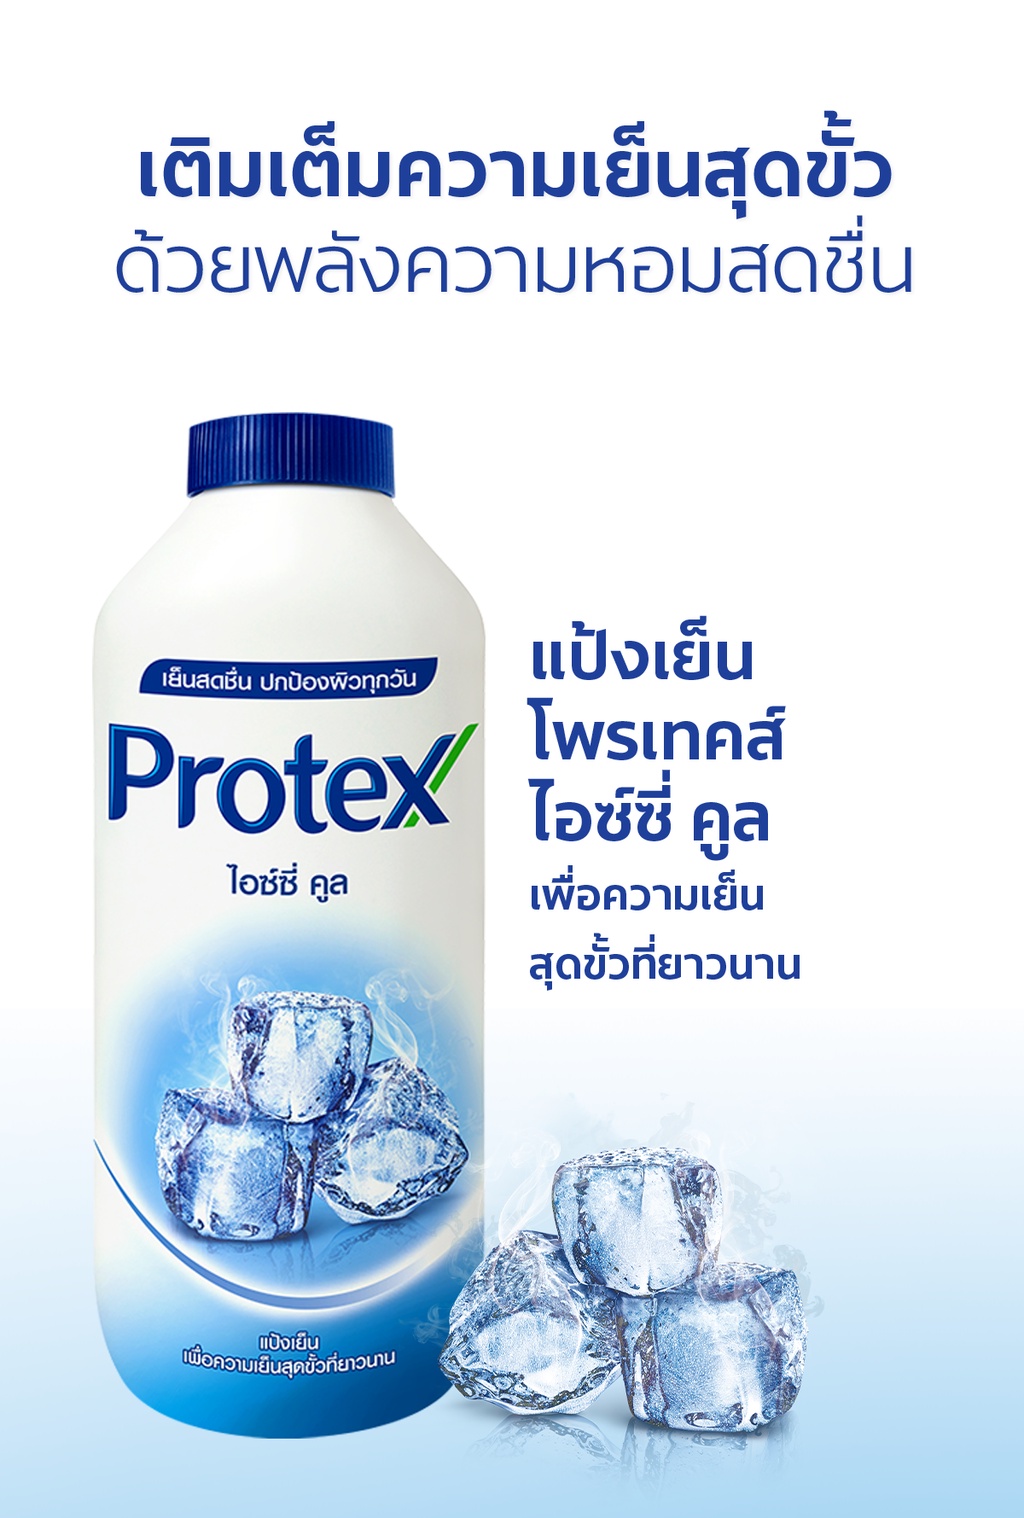 ภาพประกอบของ Protex แป้งเย็น โพรเทคส์ ไอซ์ซี่ คูล 280 ก. รวม 2 ขวด PROTEX Talcum Icy Cool 280g total 2 bottles